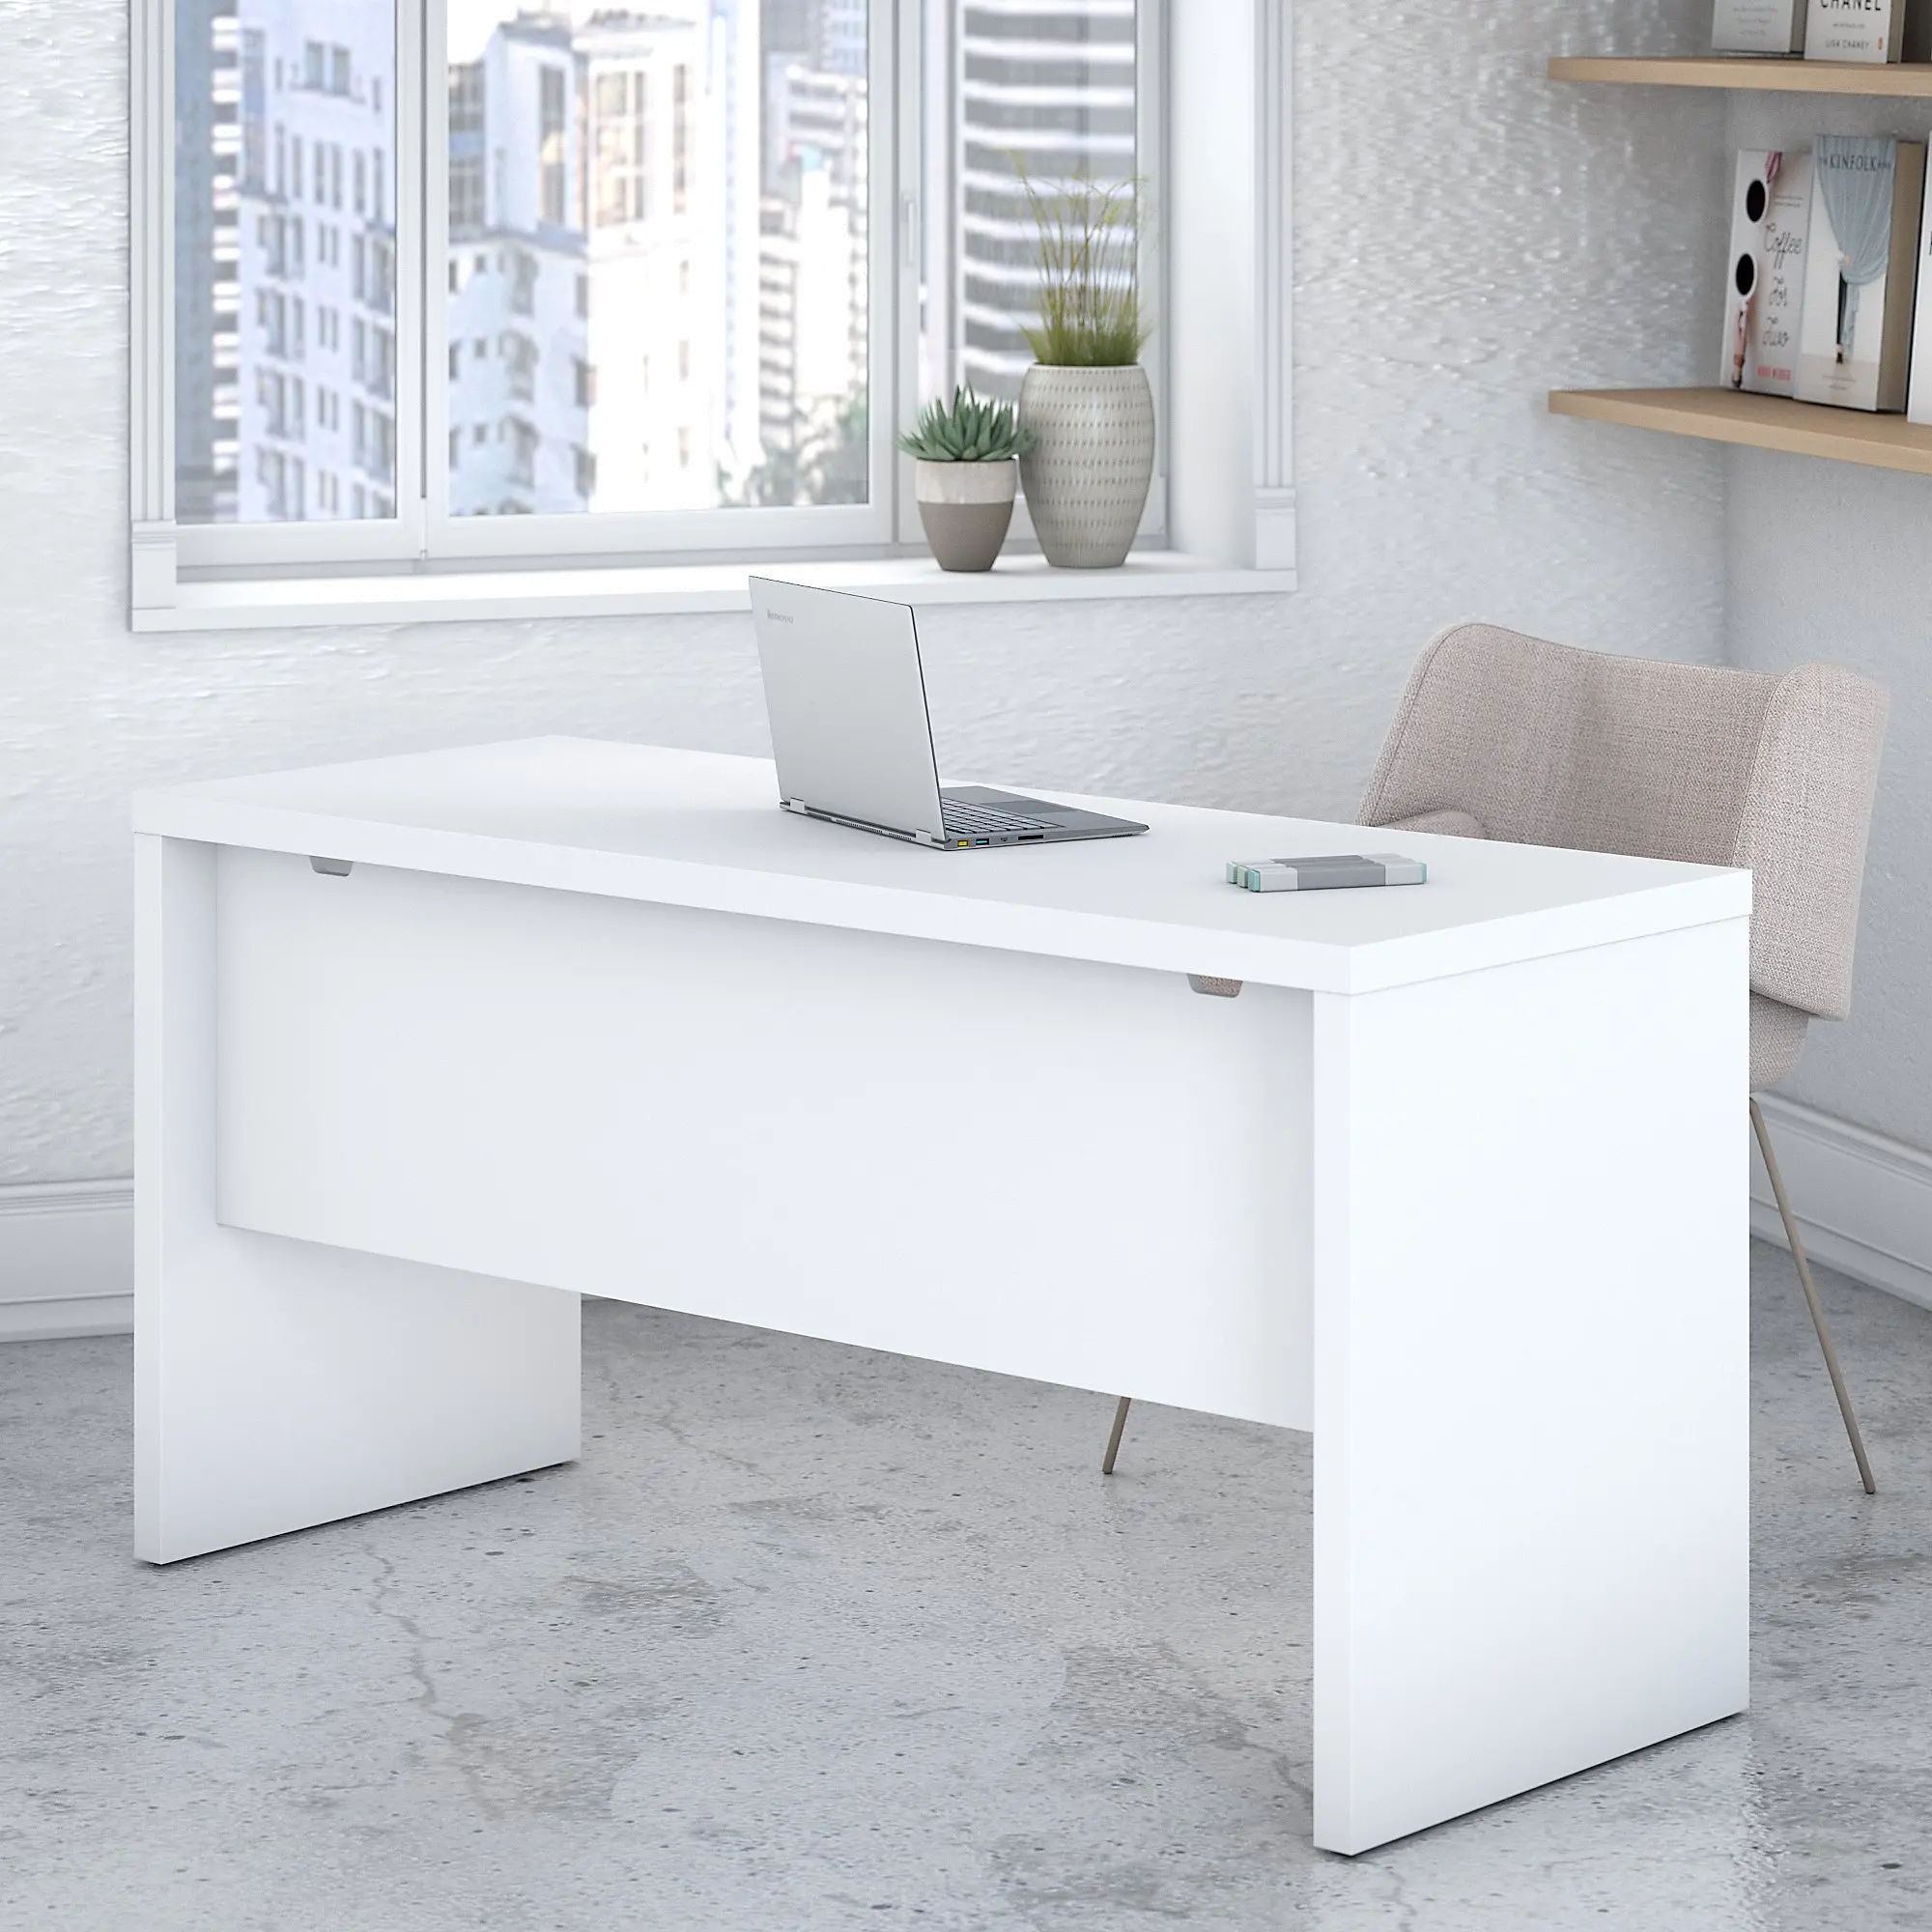 KI60106-03 Eco White Credenza Desk (60 Inch) - Bush Furniture sku KI60106-03